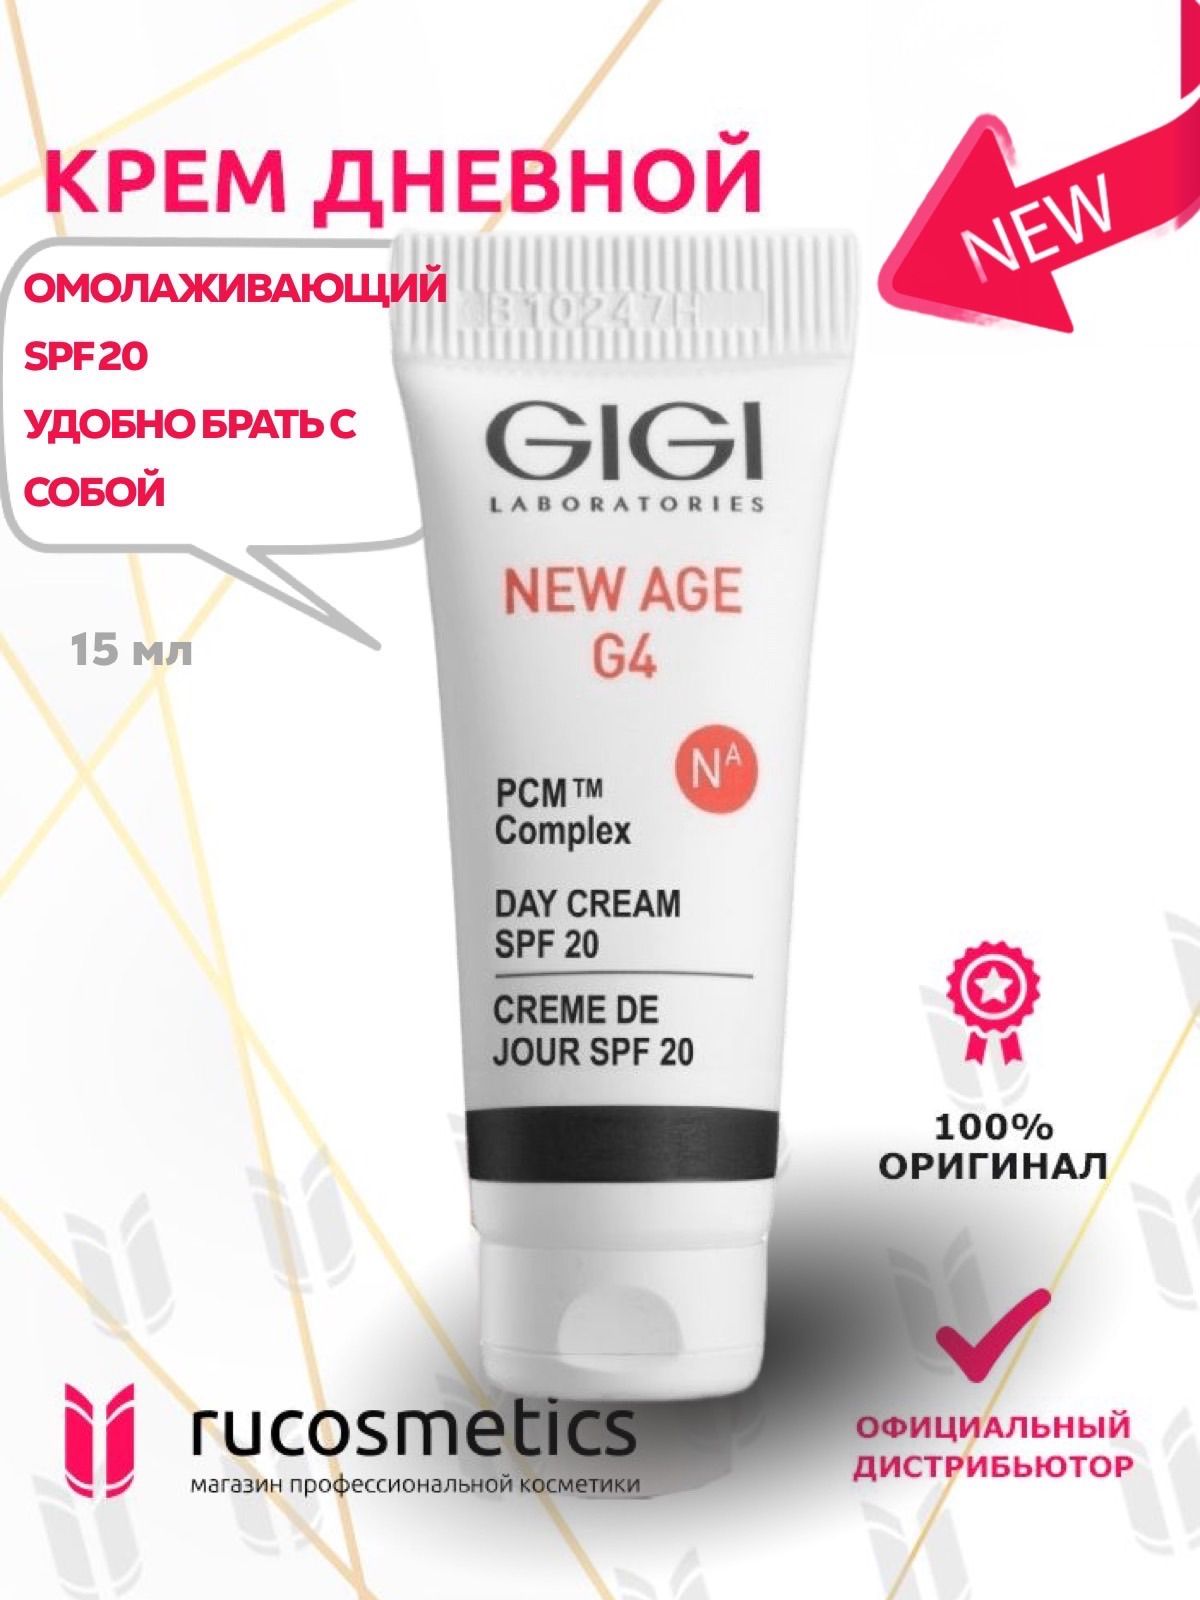 Gigi new age g4